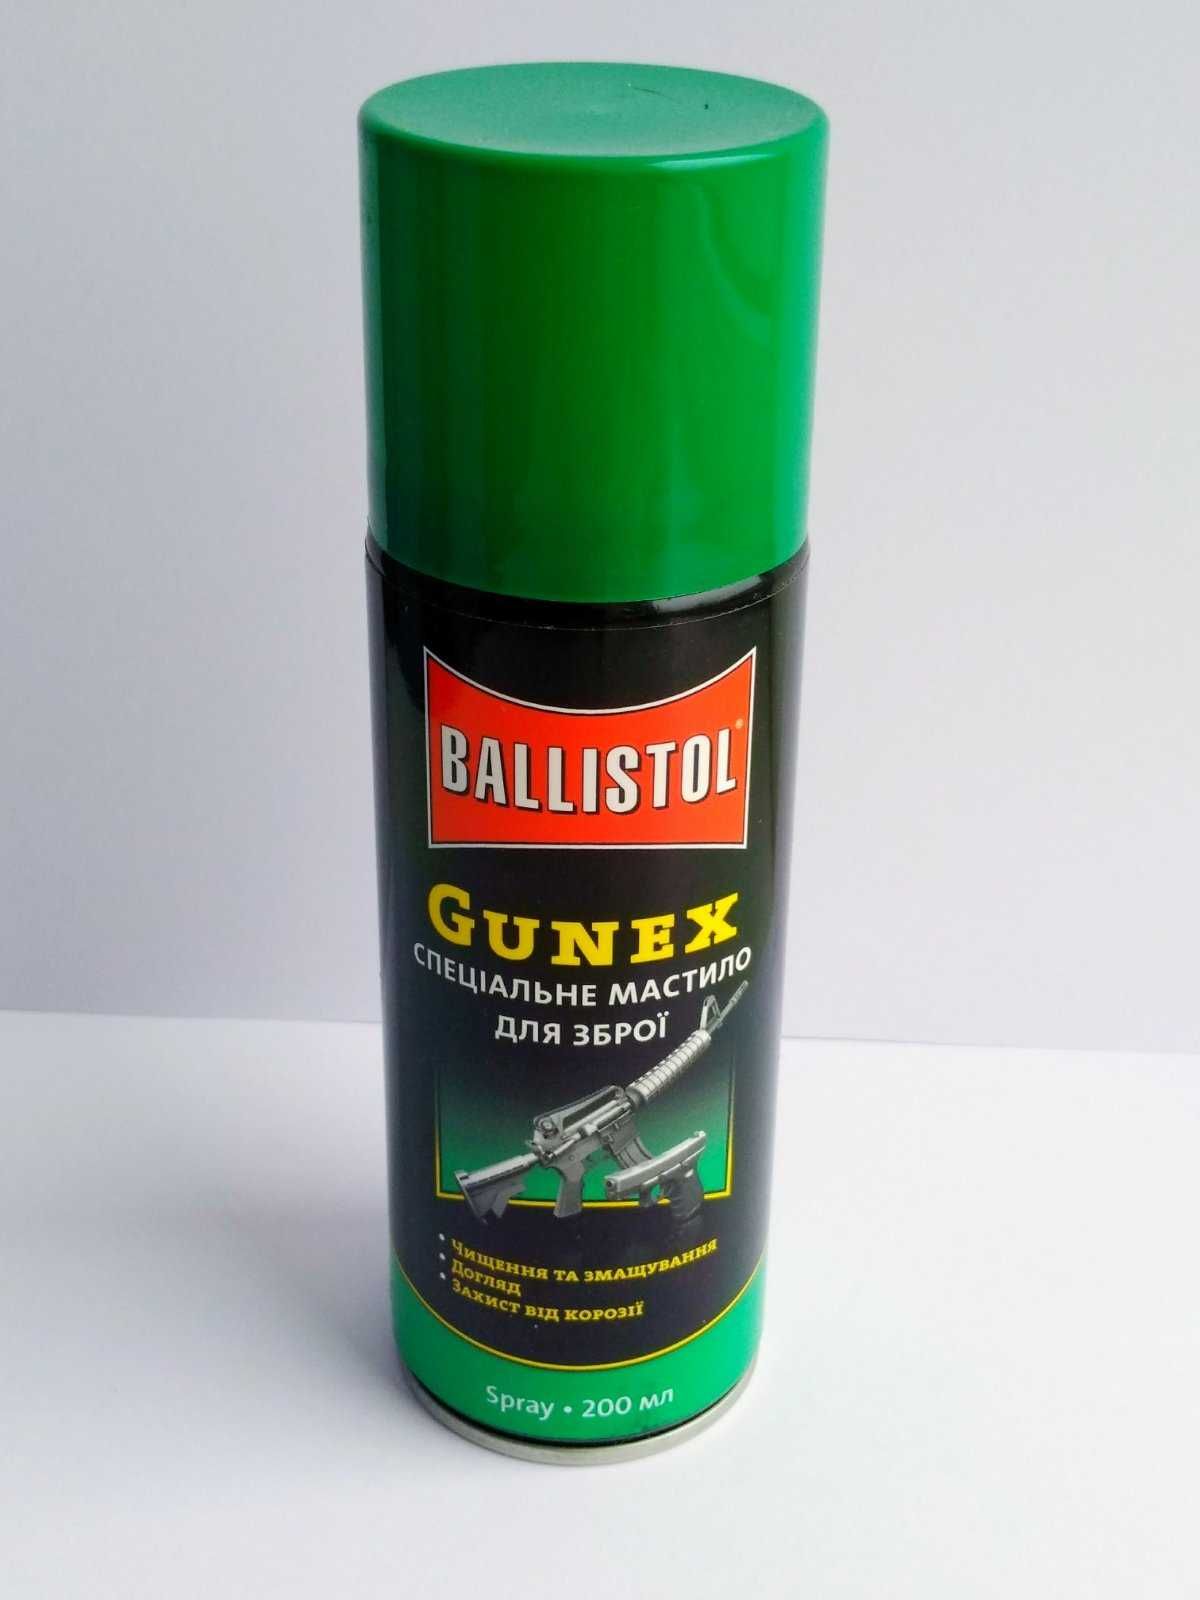 Масло збройне оружейное Ballistol Gunex 200 мл (аерозоль). Балистол